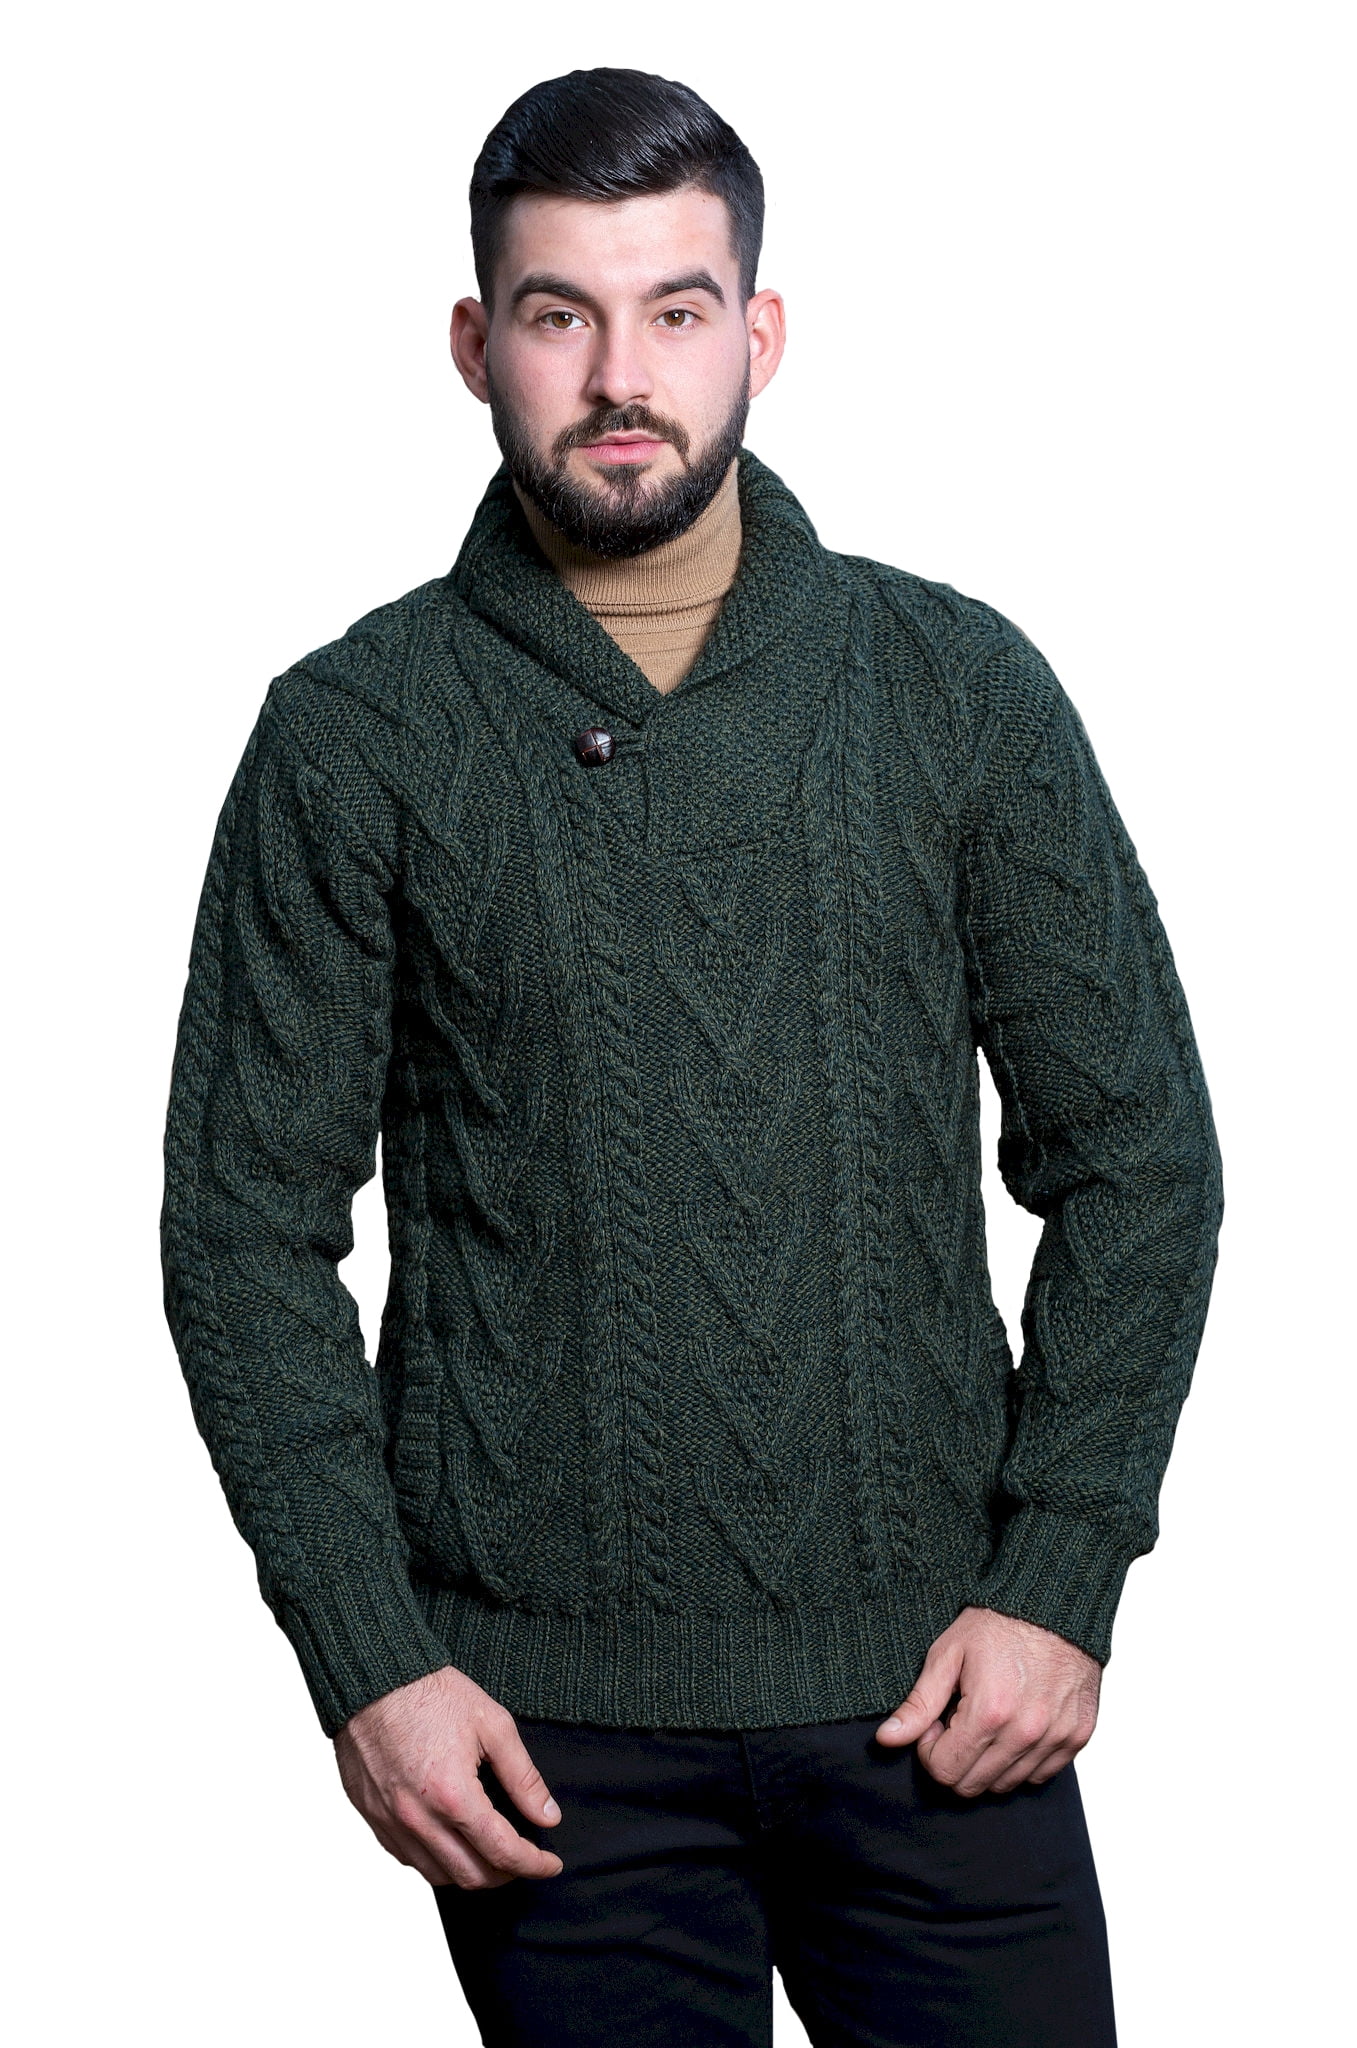 SAOL - SAOL Irish Fisherman Sweater for Men 100% Merino Wool Aran Cable ...